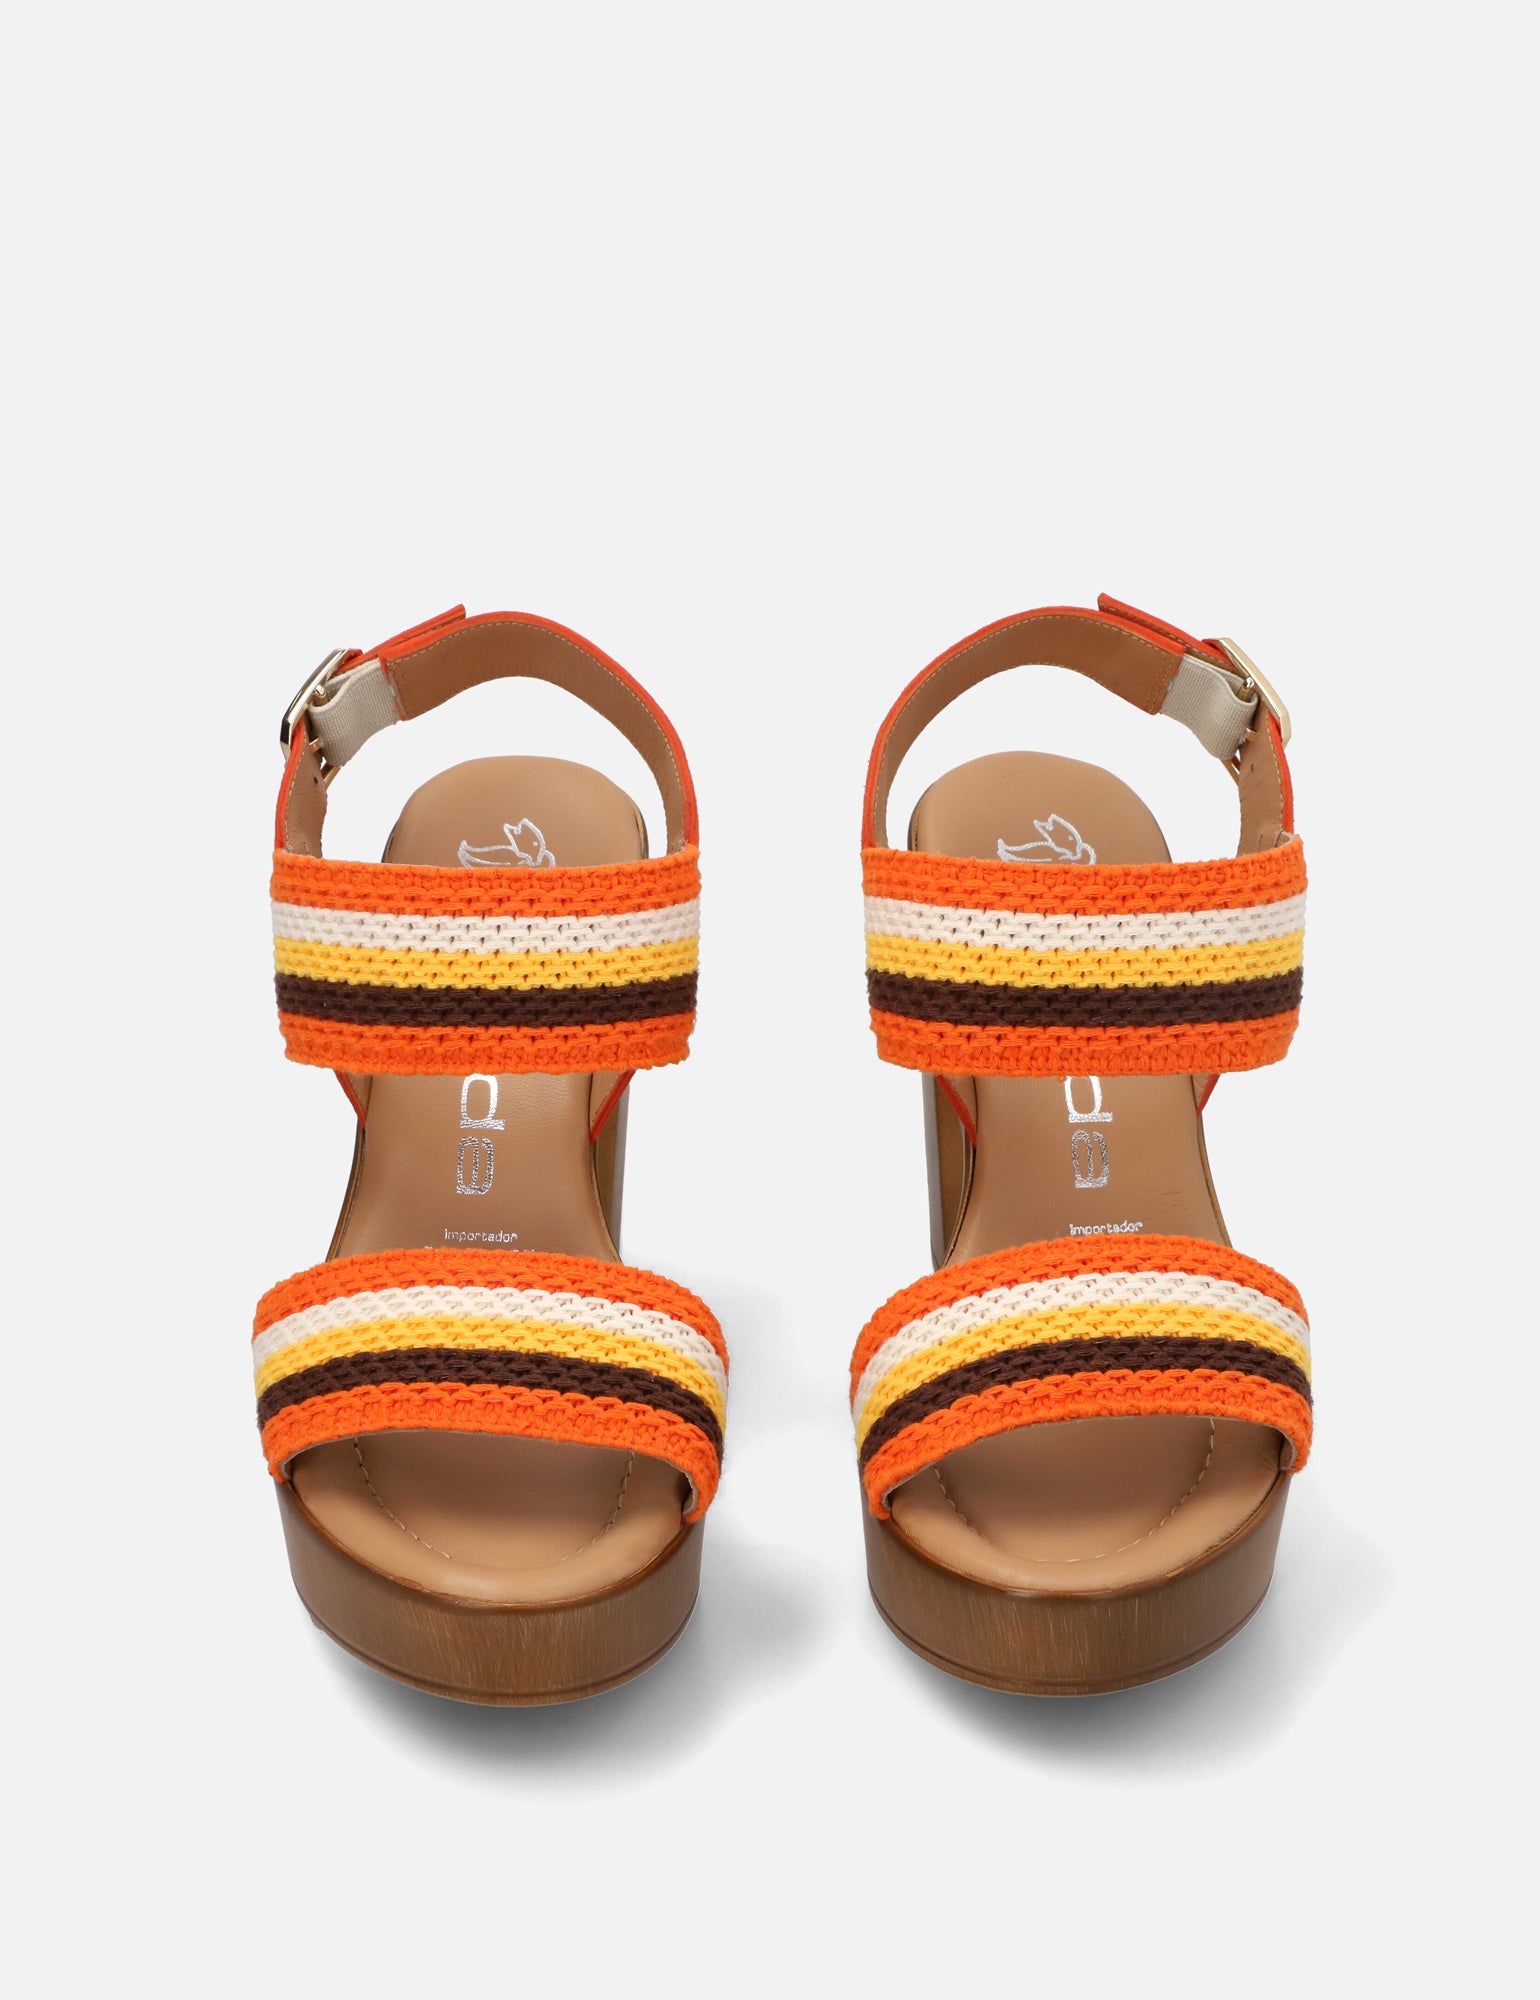 Sandalia con tiras apariencia crochet naranja